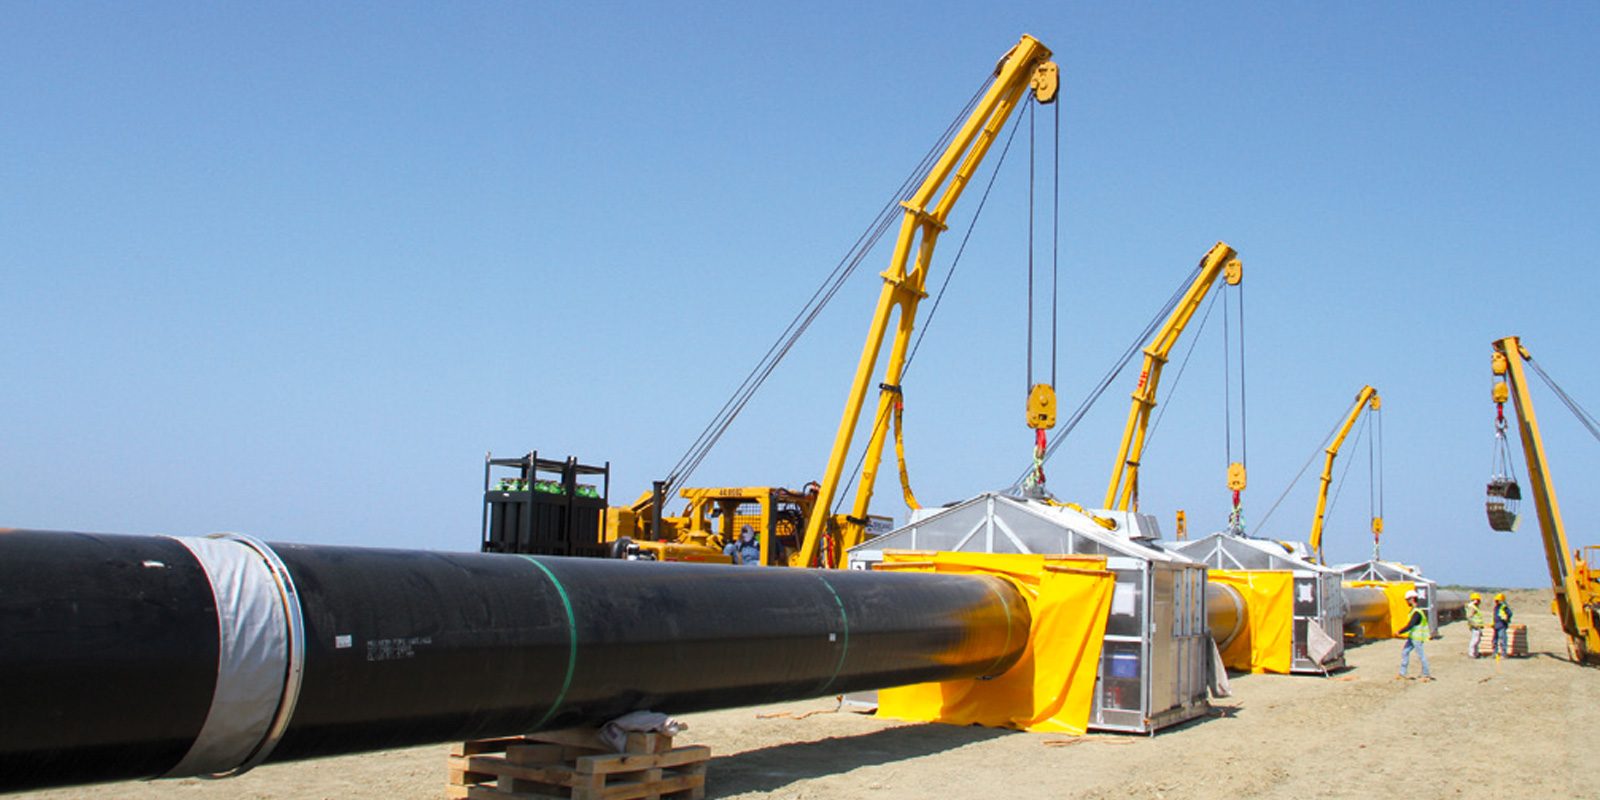 Проект Trans adriatic pipeline (Sices)